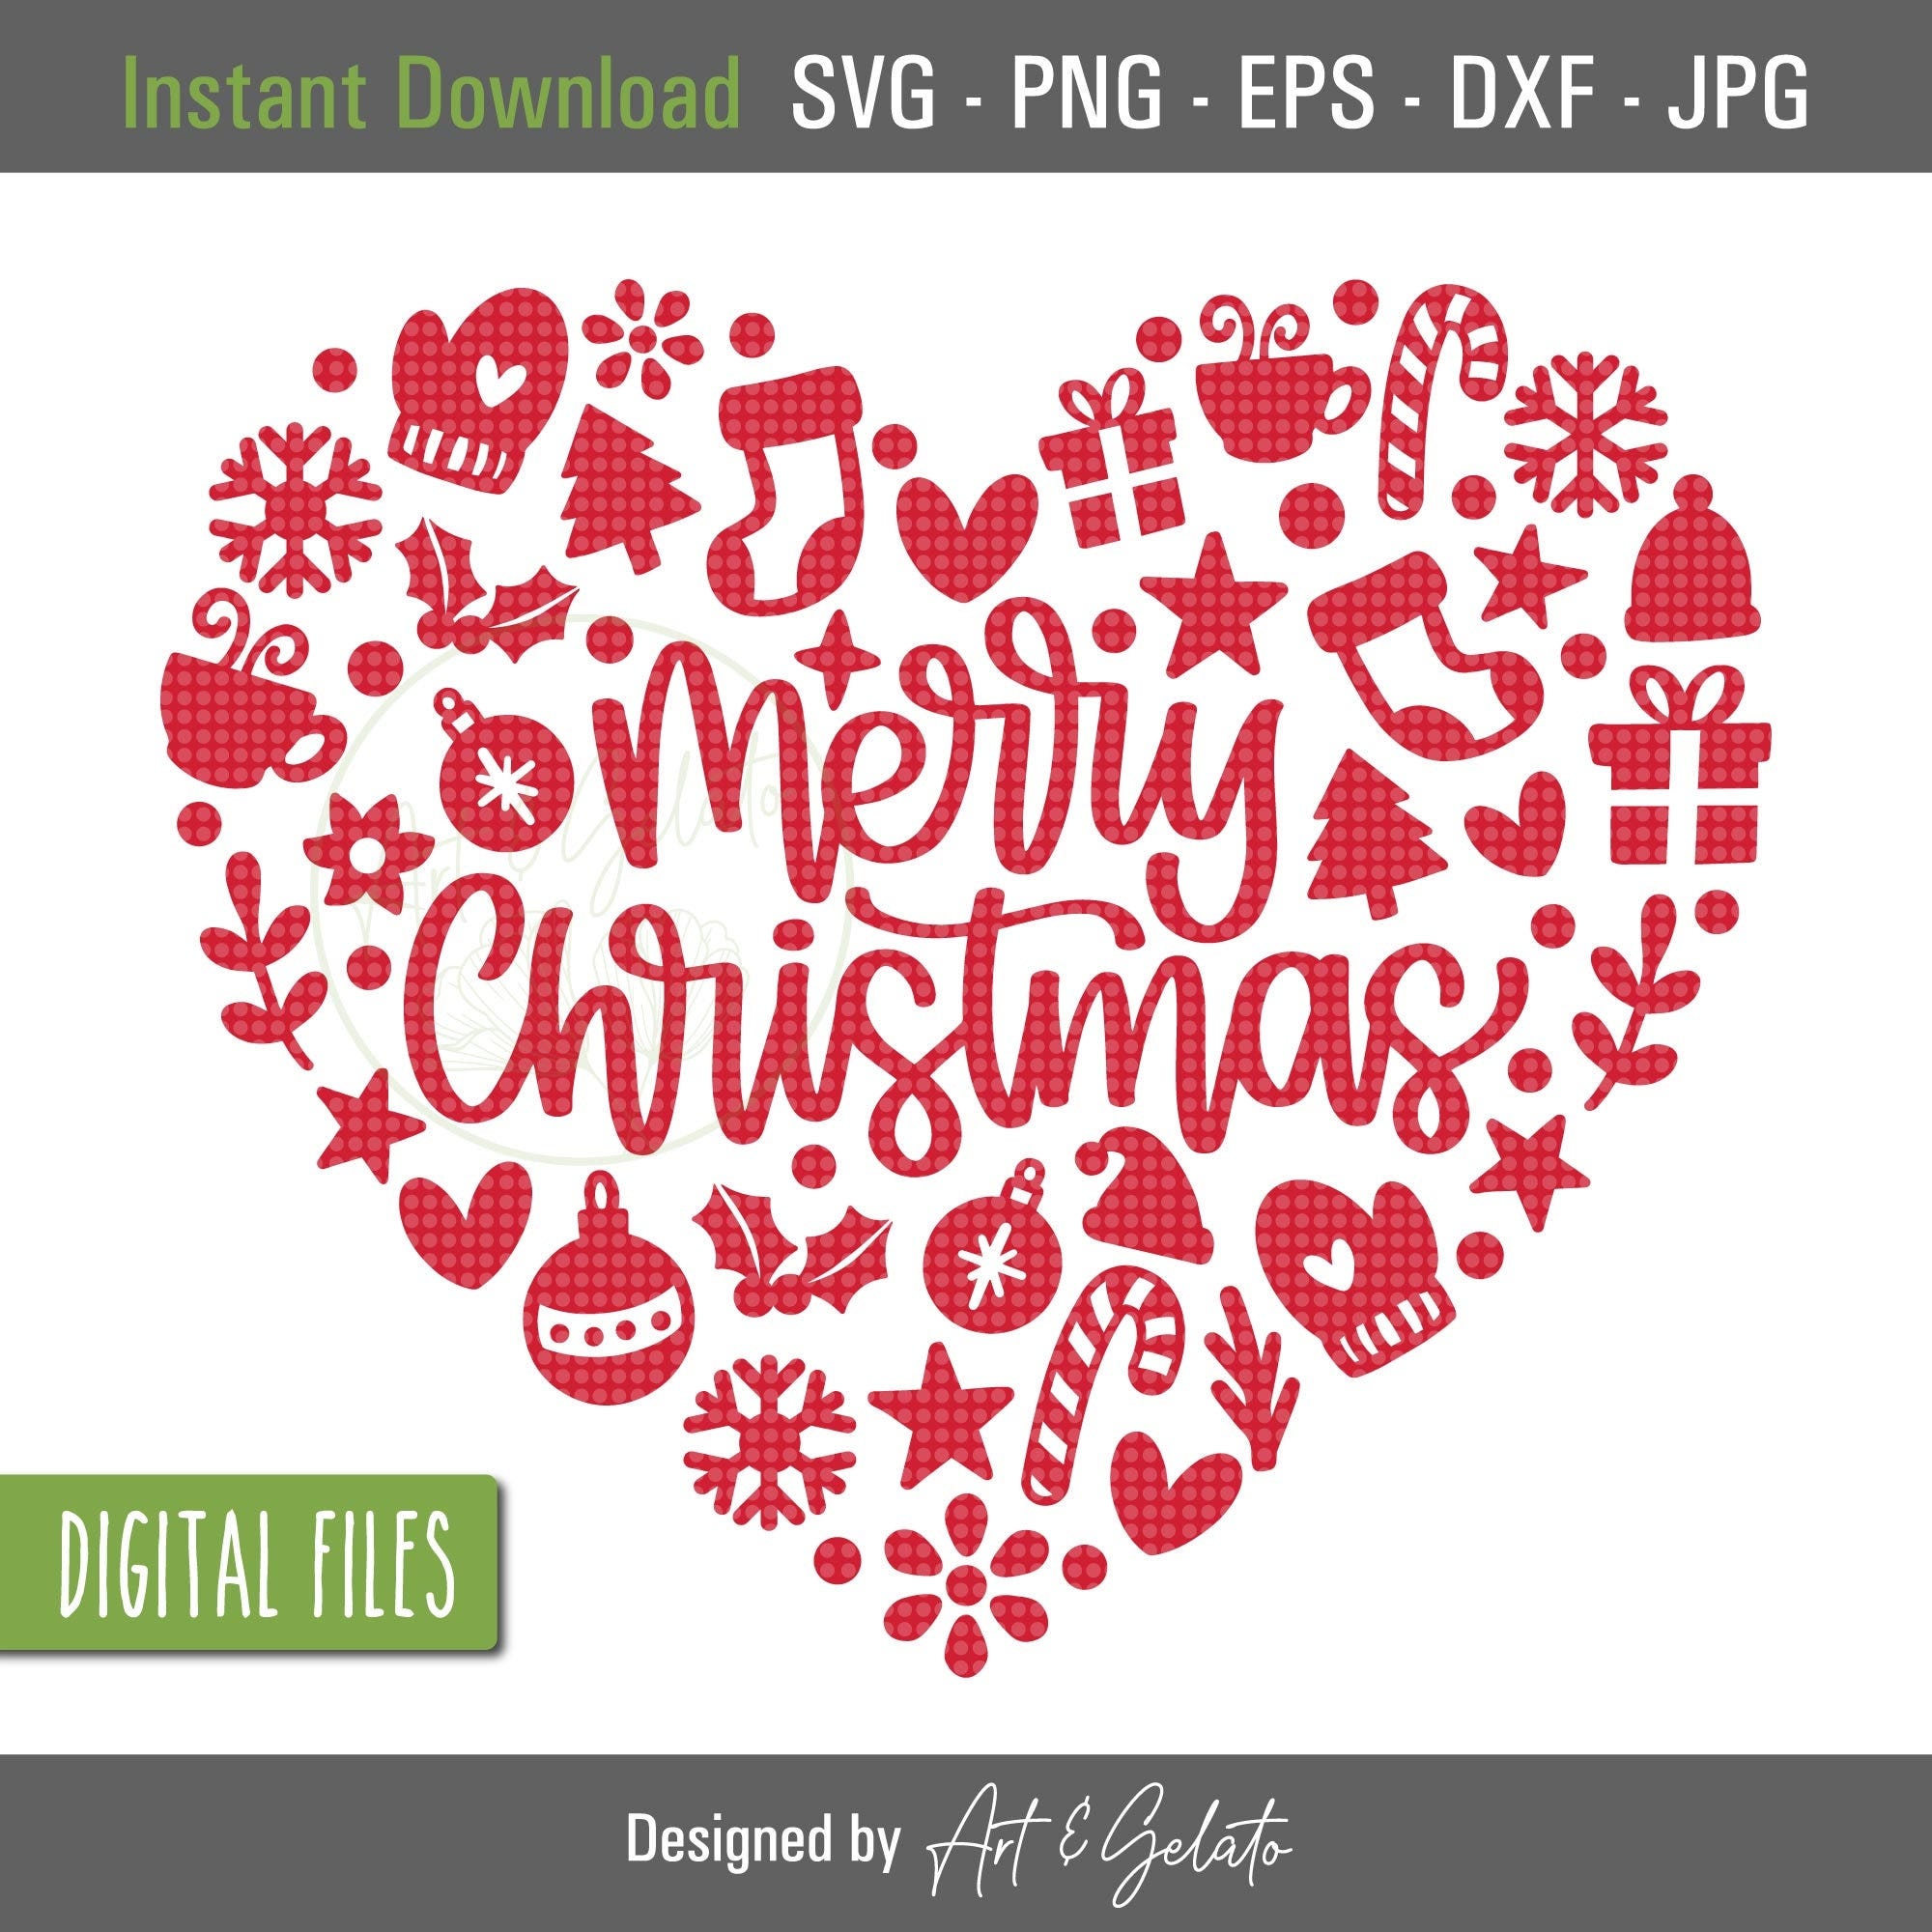 Merry Christmas Heart SVG, Christmas Pattern Heart SVG, Christmas Shirt SVG, Heart Svg, Christmas doodles, Christmas love, Christmas Decor